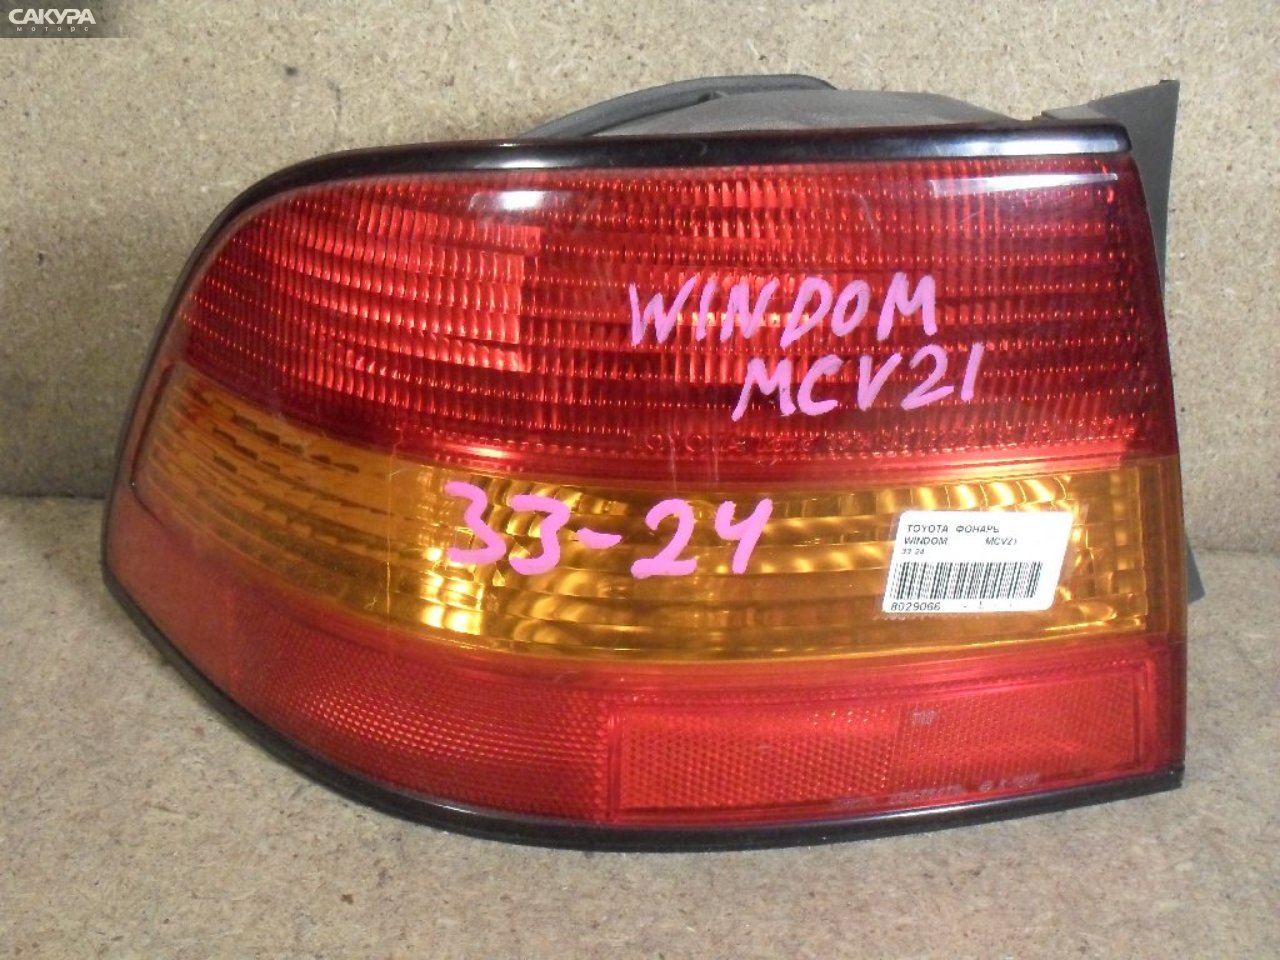 Фонарь стоп-сигнала левый Toyota Windom MCV21 33-24: купить в Сакура Абакан.